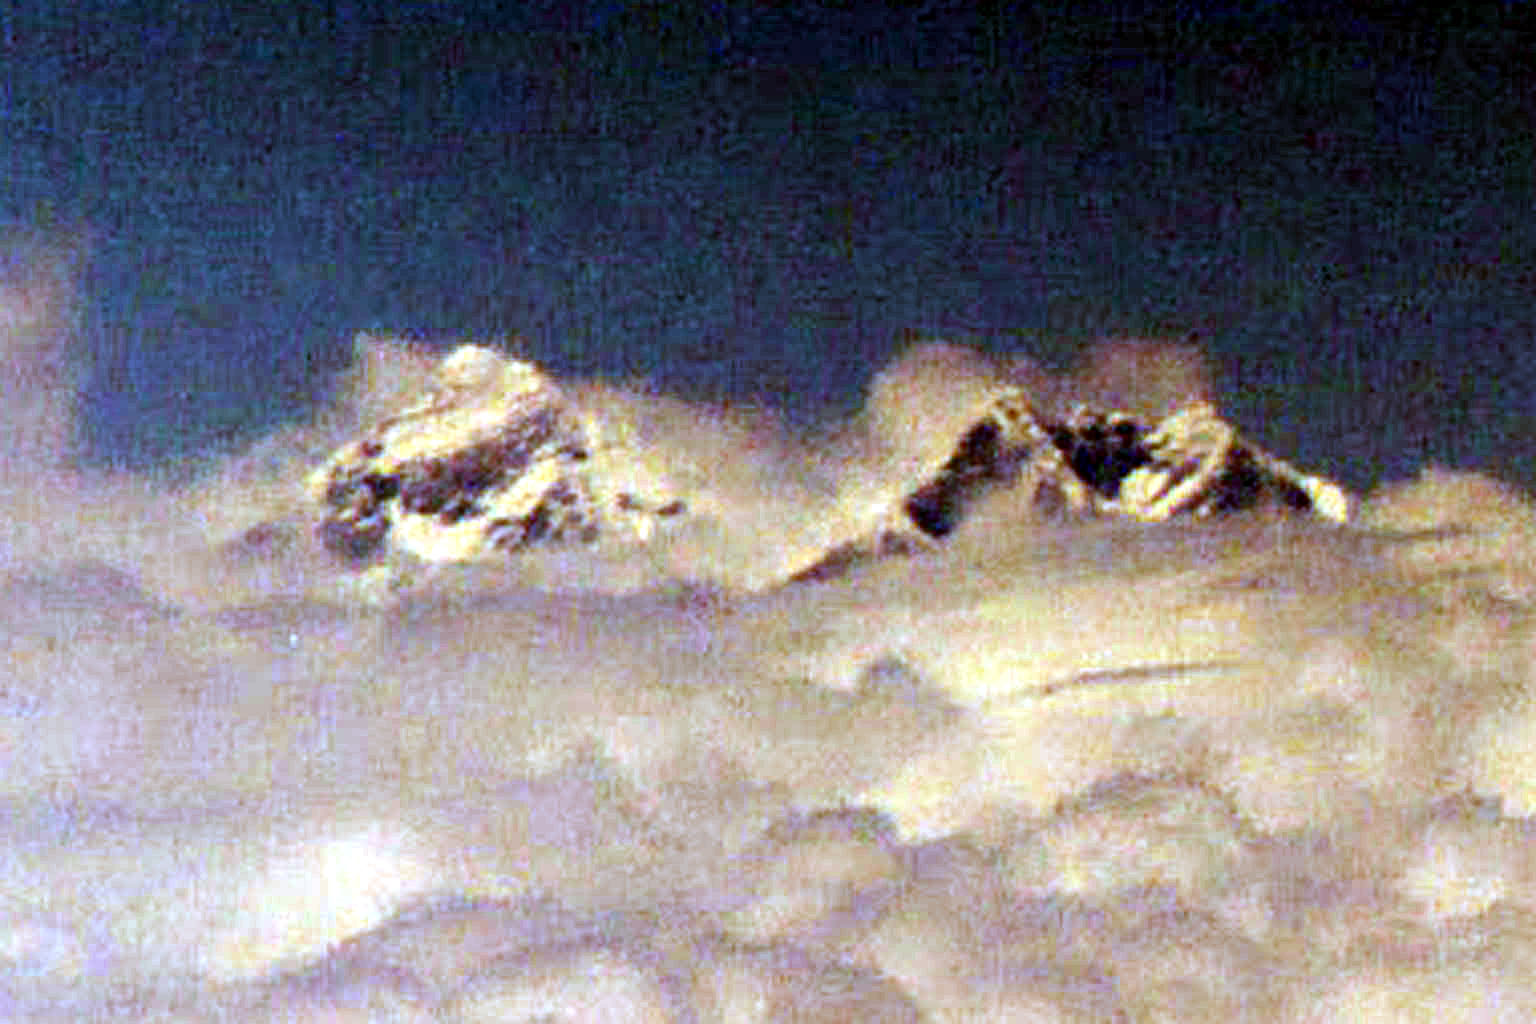 Mount Everest Sagaramatha